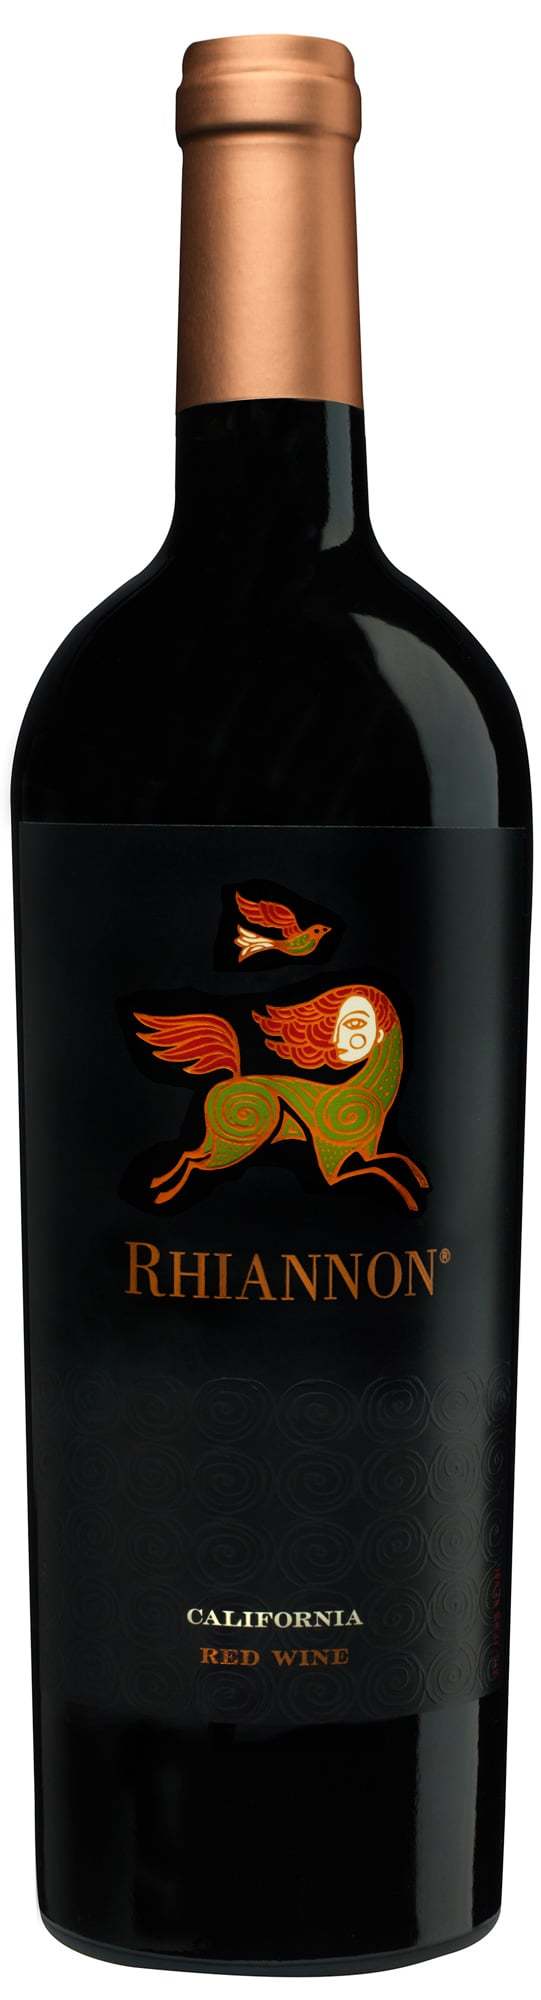 Rhiannon Red Wine 2016